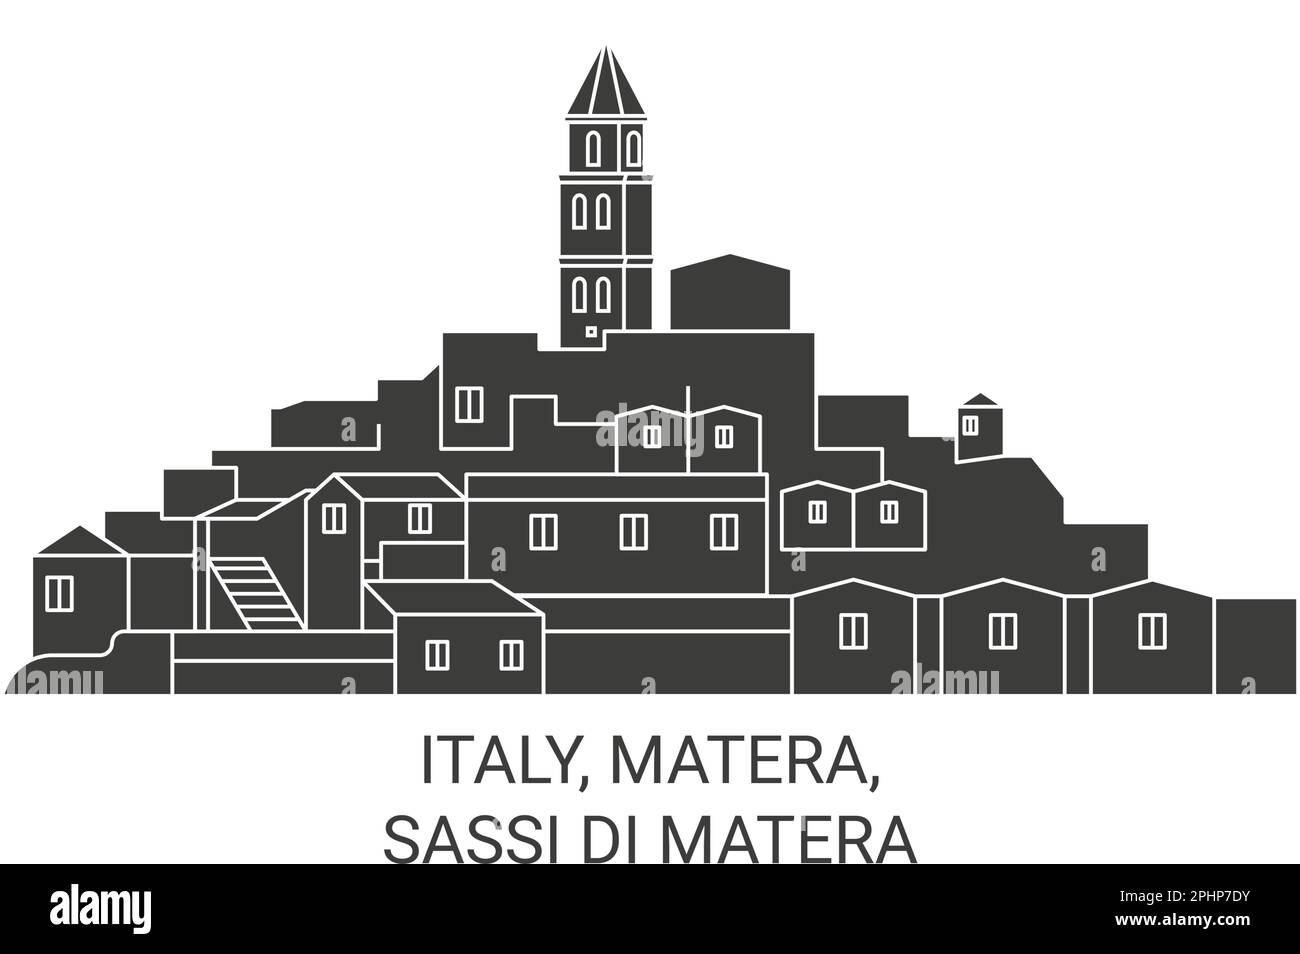 Italia, Matera, Sassi Di Matera ilustración vectorial de referencia de viaje Ilustración del Vector